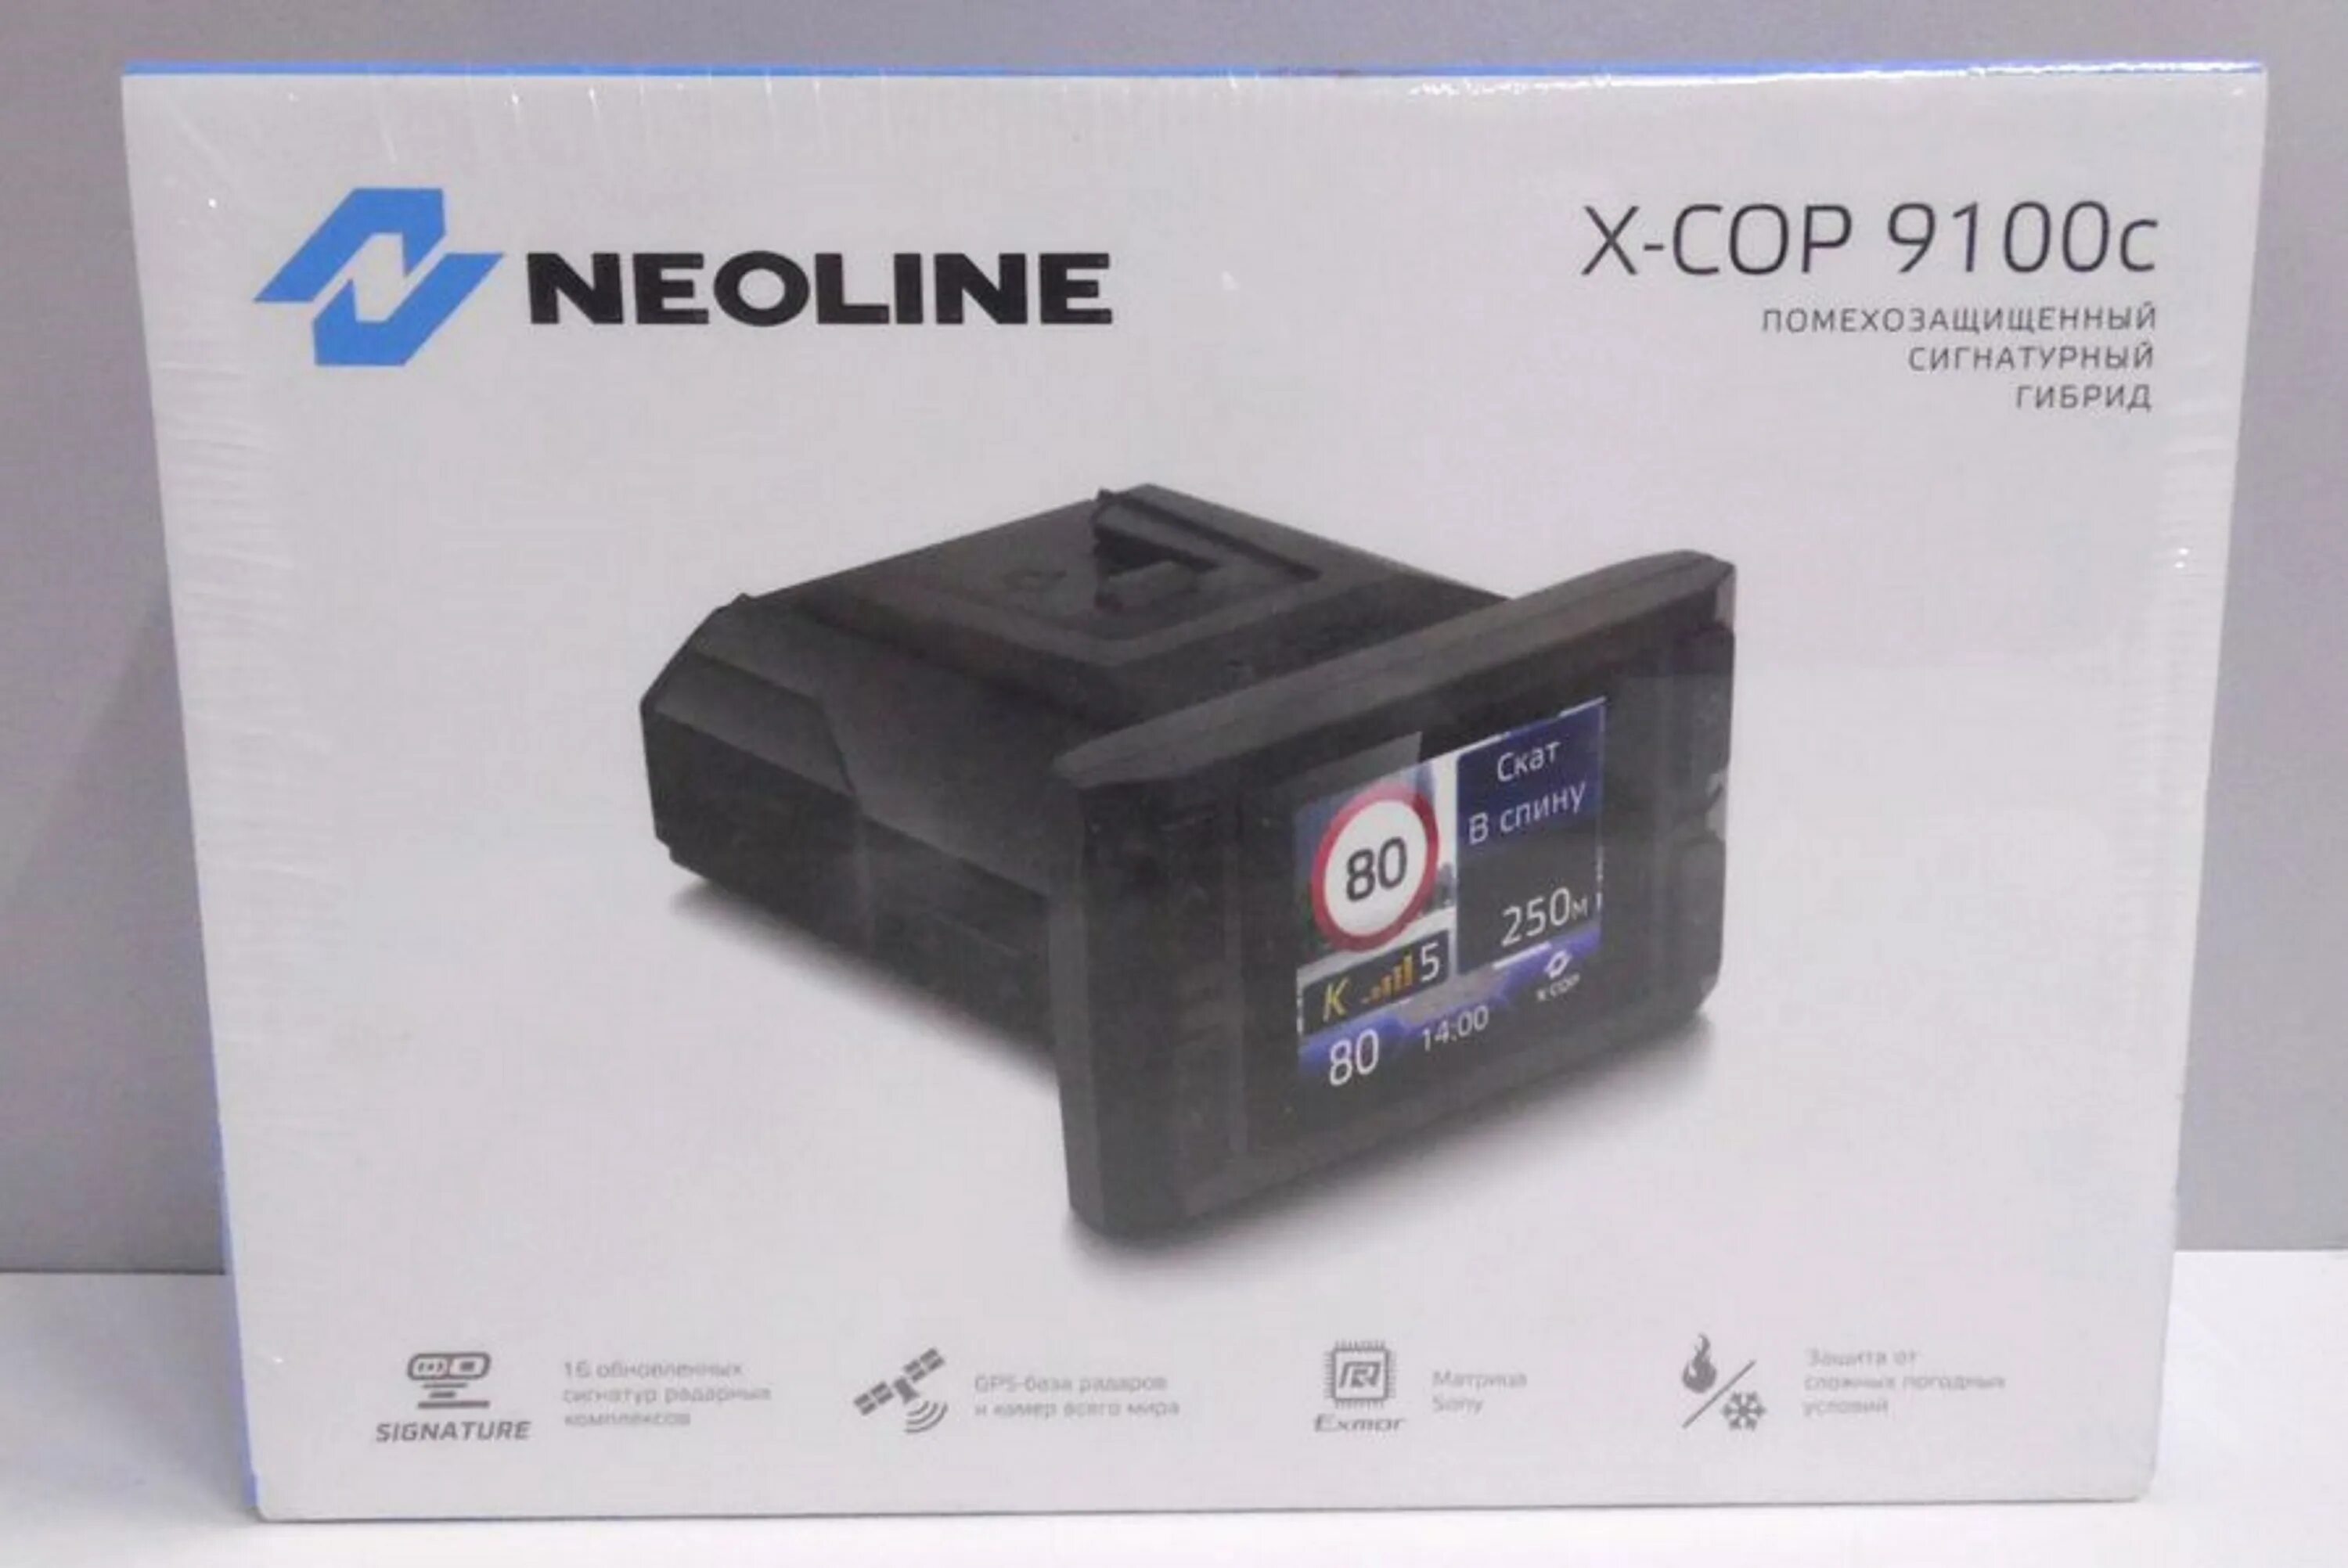 Neoline x cop 9100c. X-cop 9100c. Neoline x-cop 9100x картинки. X-cop 9100c различия.